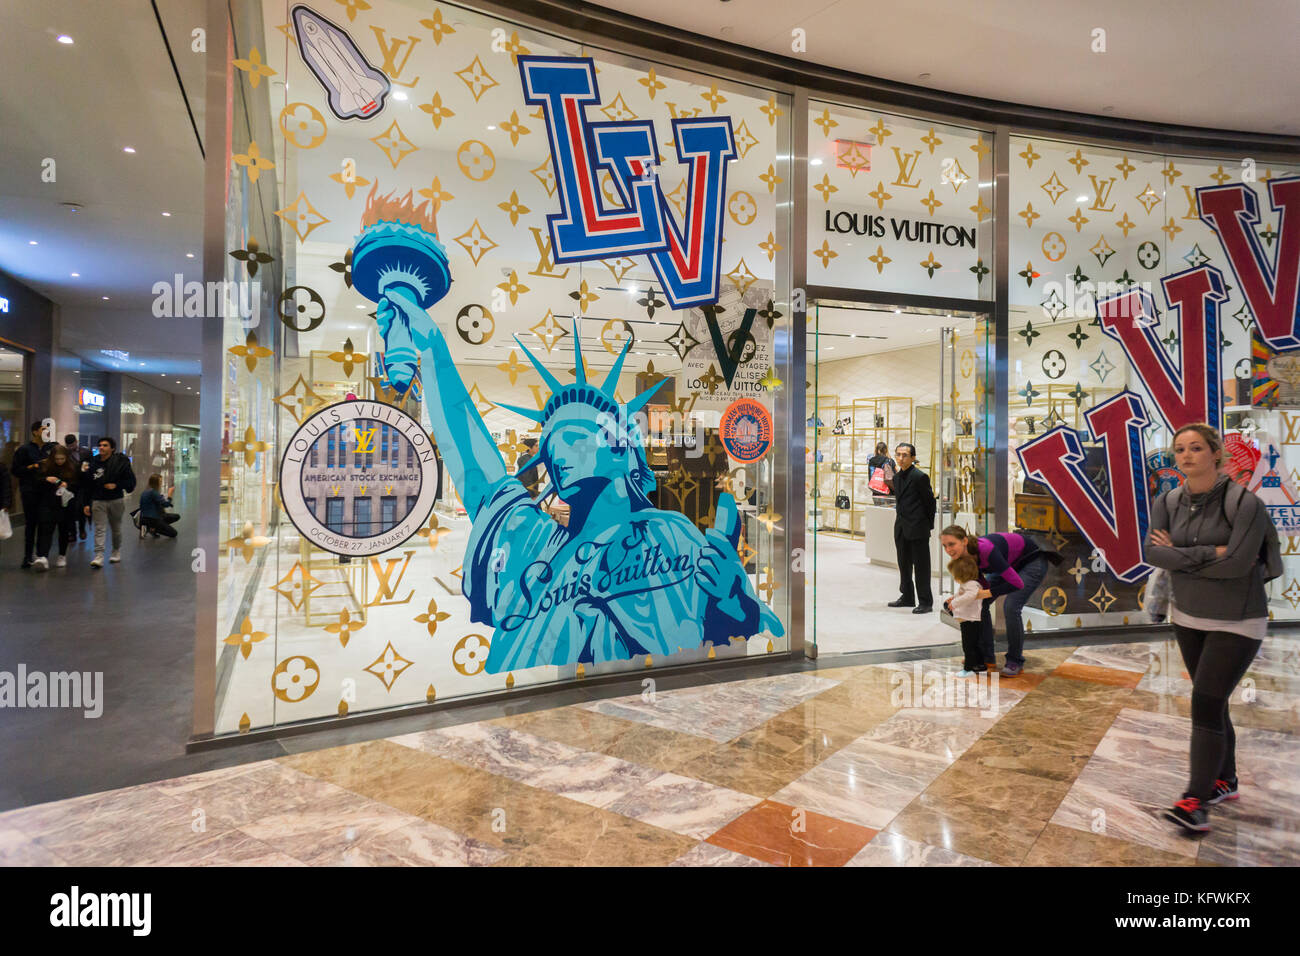 Louis Vuitton to open a new address on the Champs-Élysées